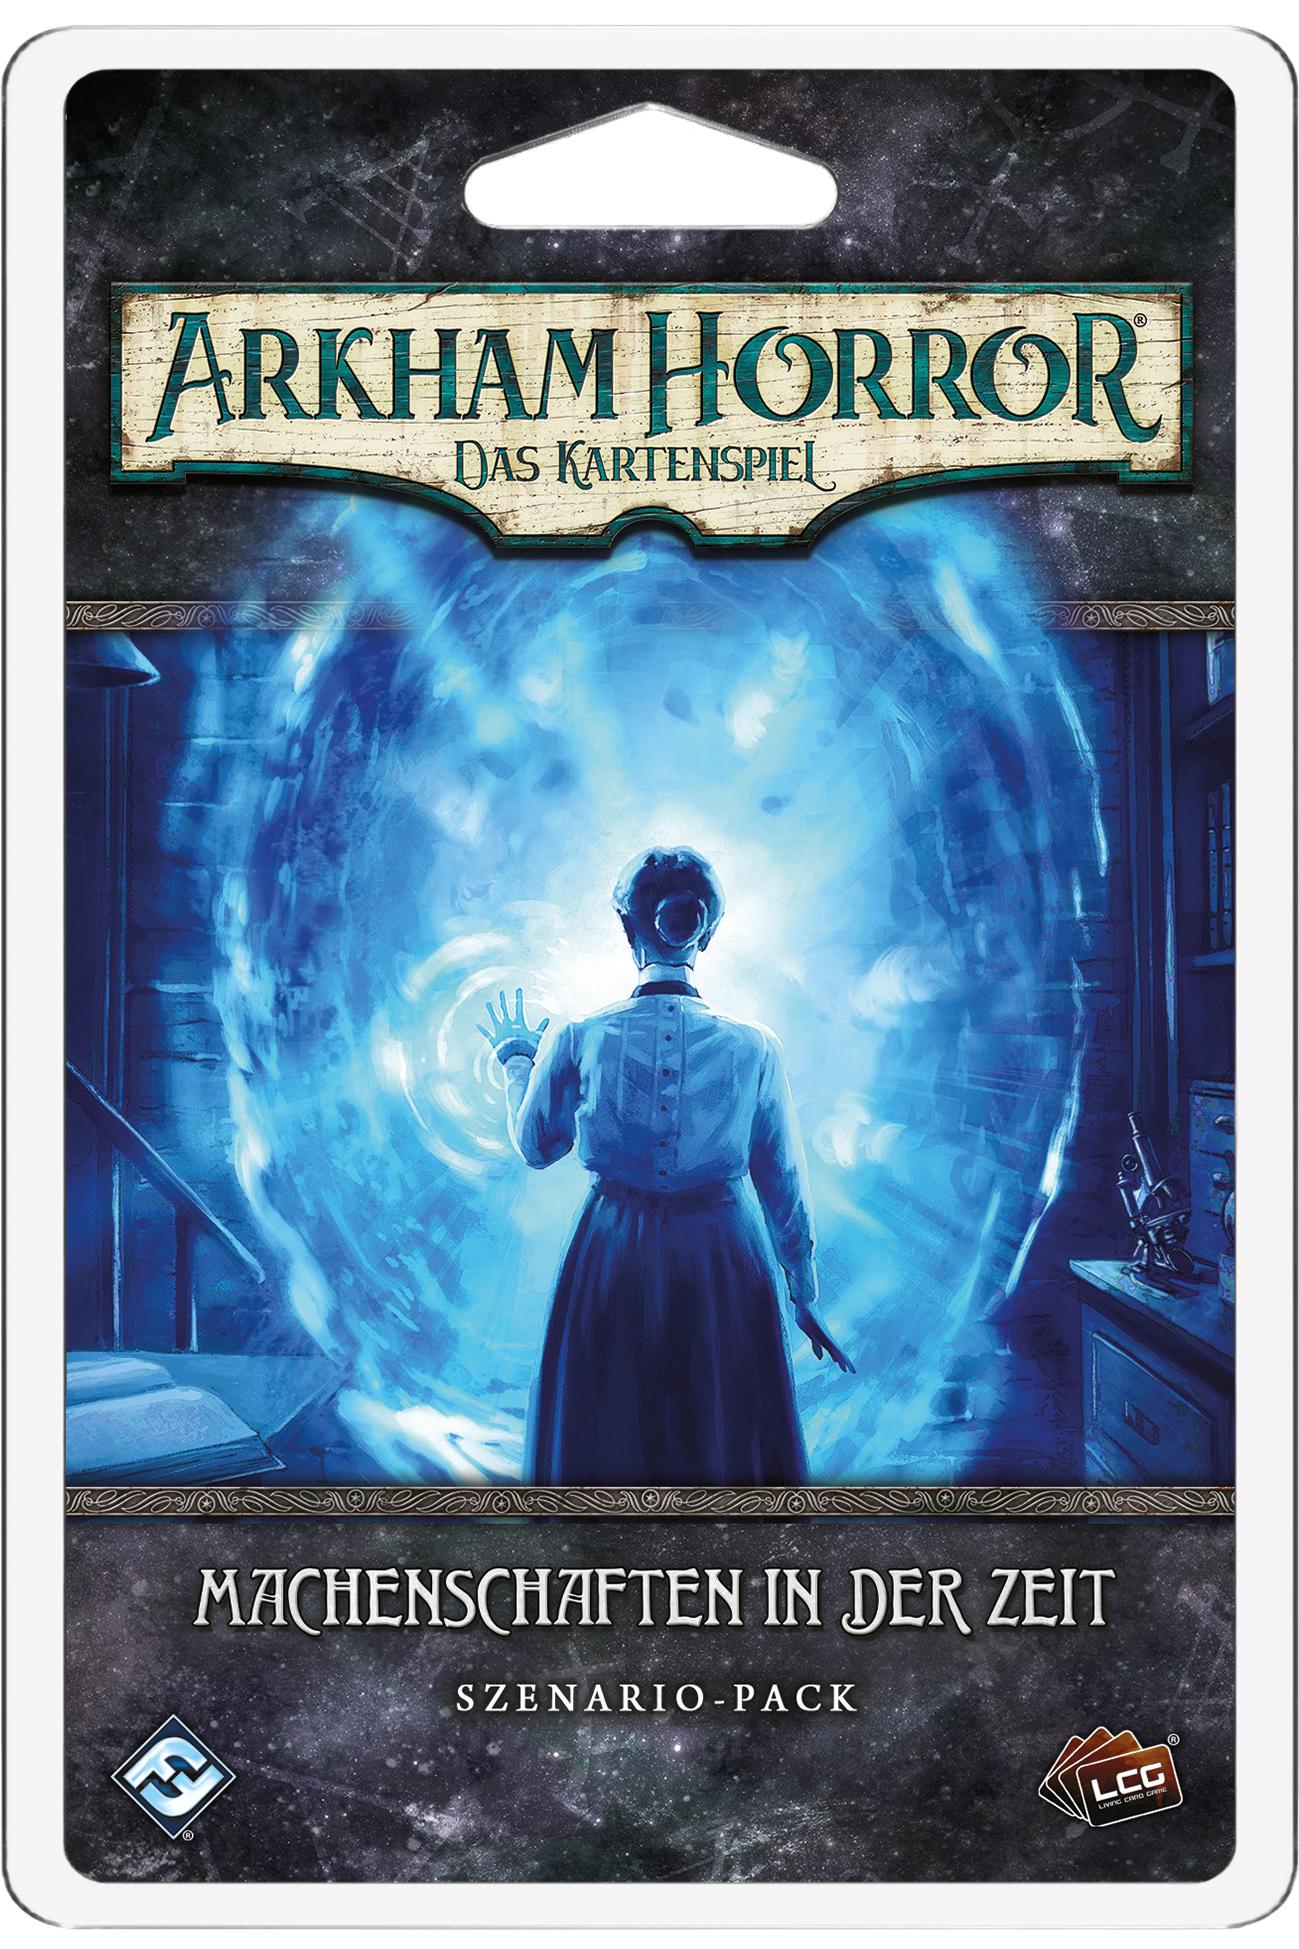 Arkham Horror: Das Kartenspiel - Szenario-Pack: Machenschaften in der Zeit